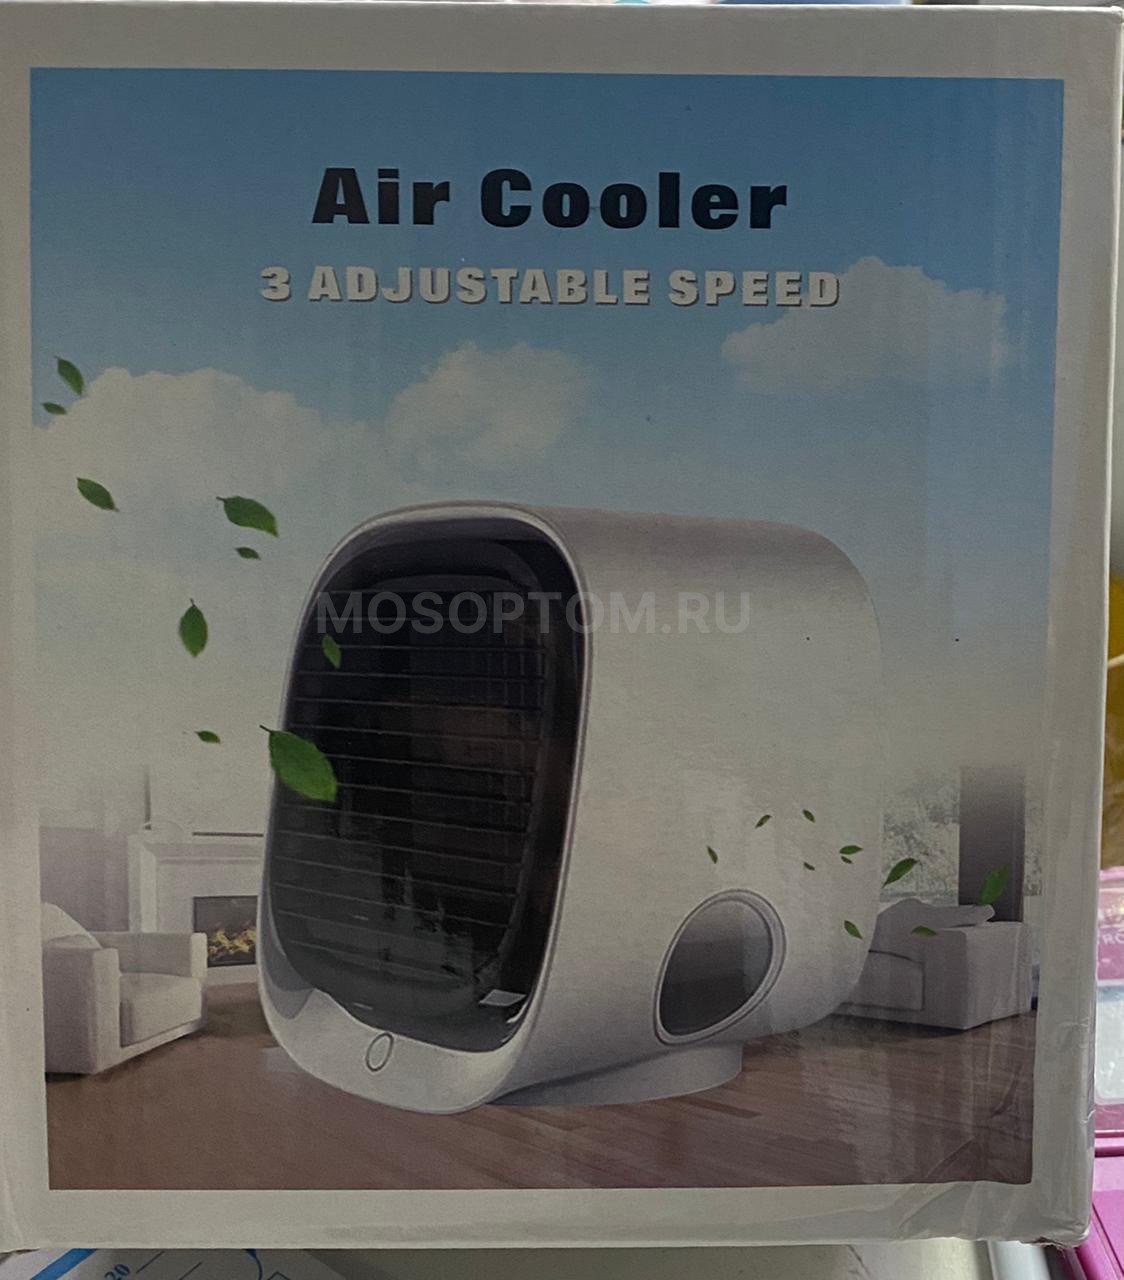 Мини-кондиционер настольный Air Cooler 3 Adjustable Speed оптом - Фото №6